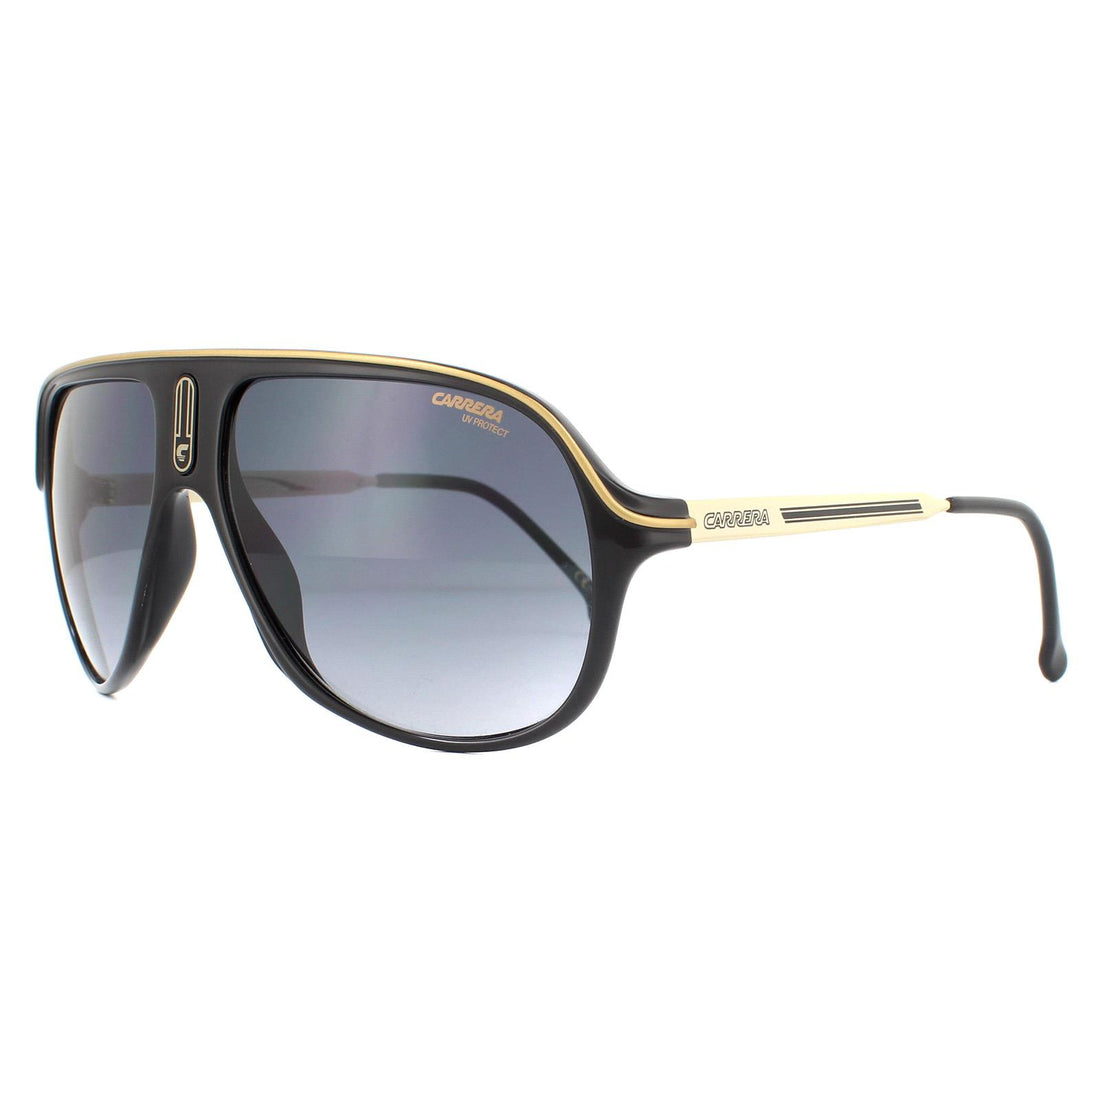 Carrera Sunglasses Safari65/N 807 9O Black Dark Grey Gradient